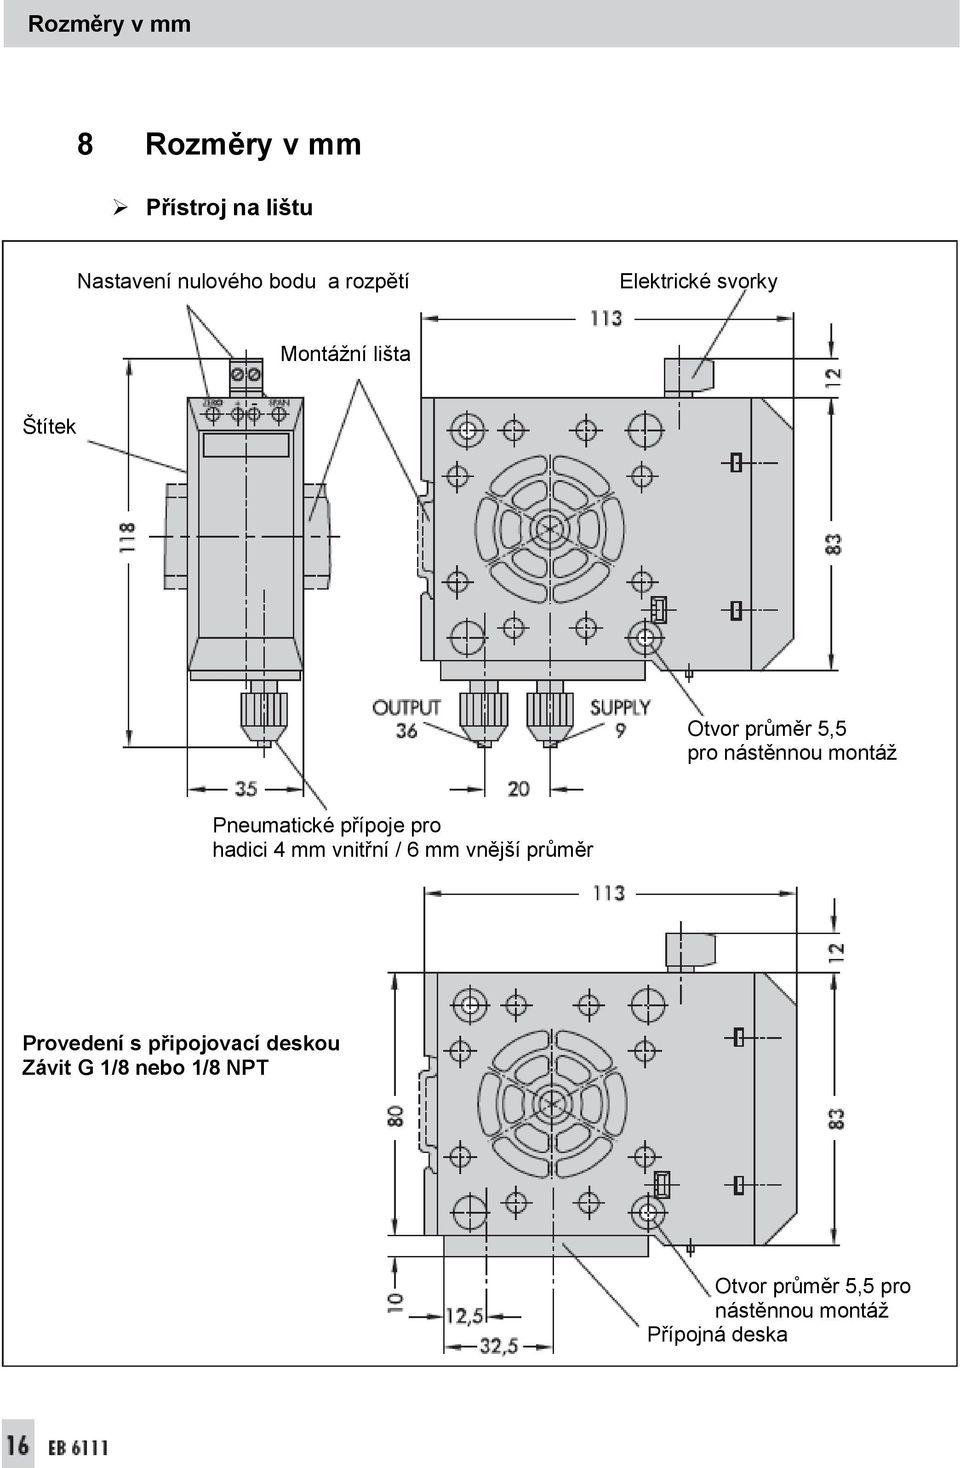 Pneumatické přípoje pro hadici 4 mm vnitřní / 6 mm vnější průměr Provedení s